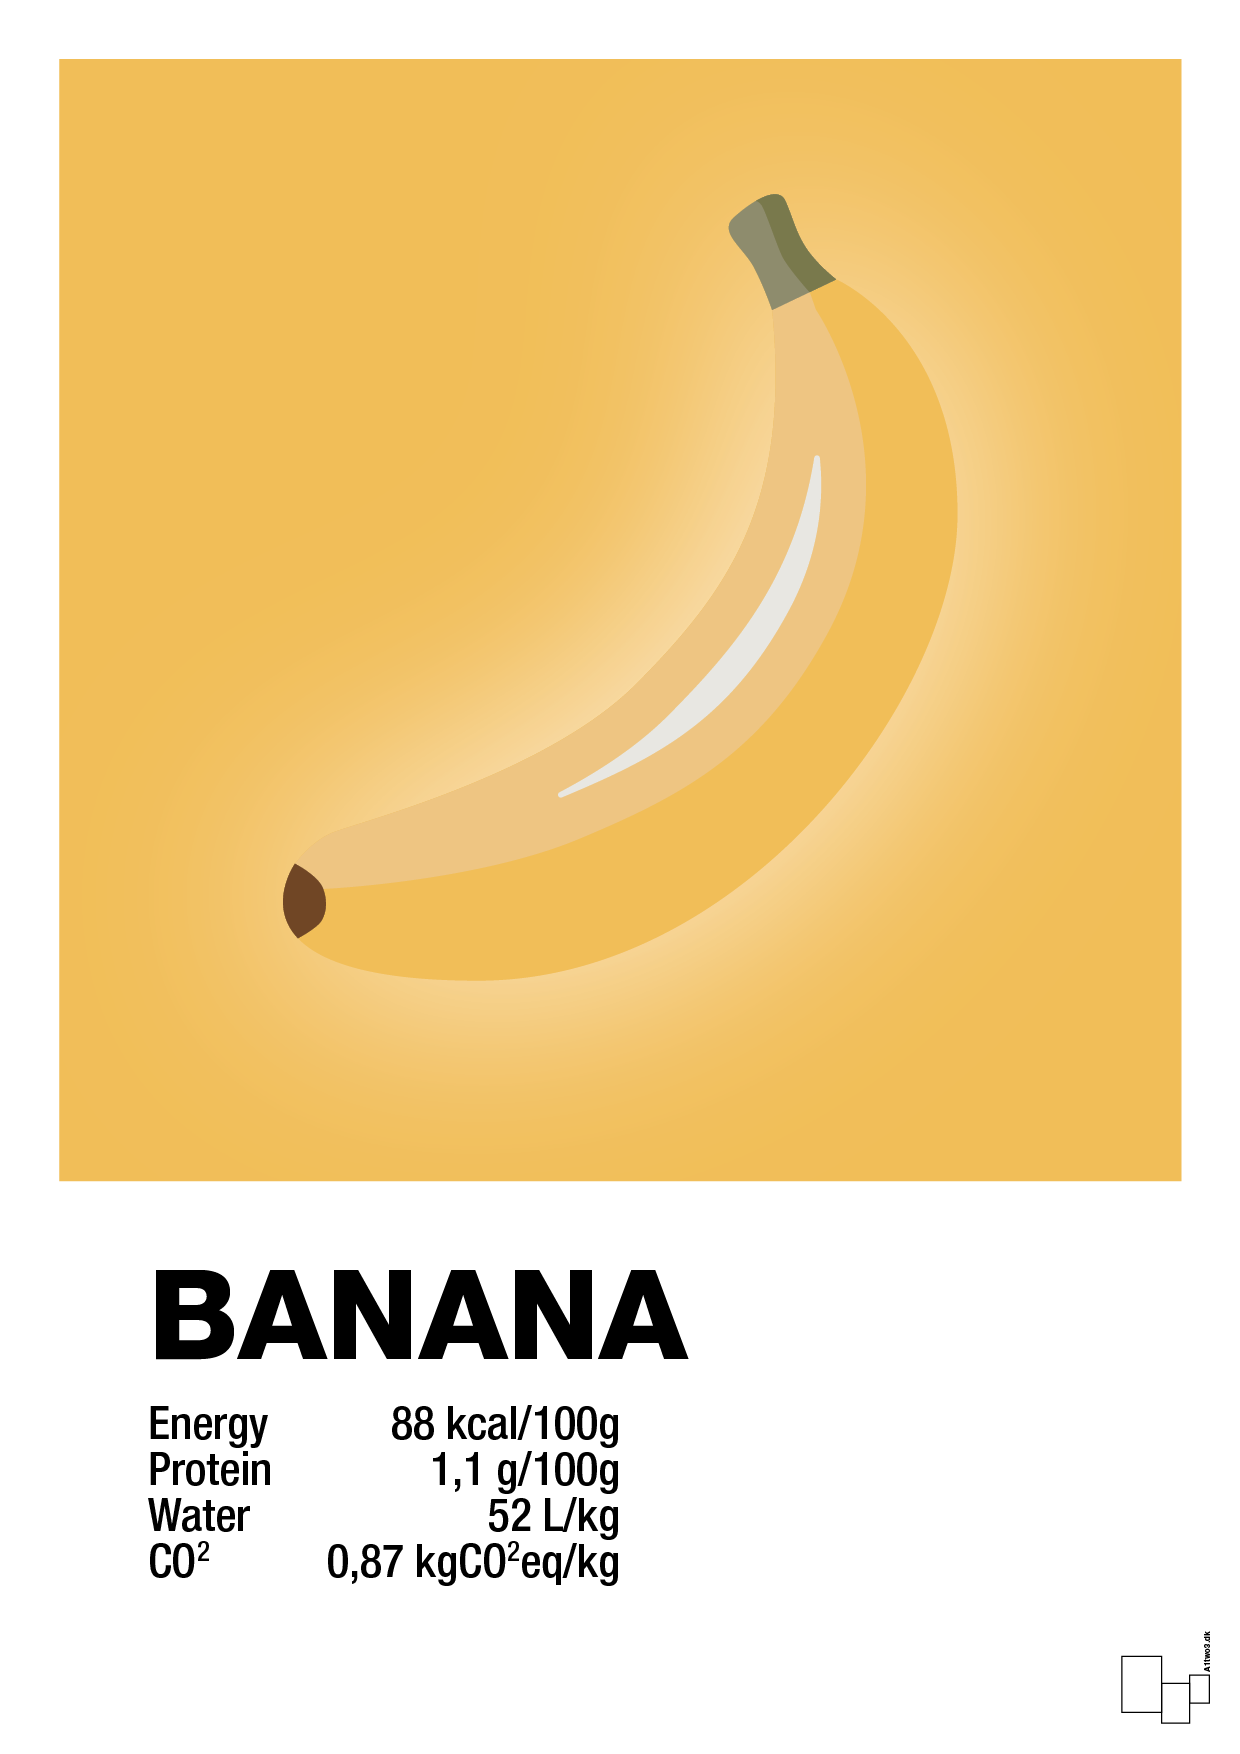 banana nutrition og miljø - Plakat med Mad & Drikke i Honeycomb